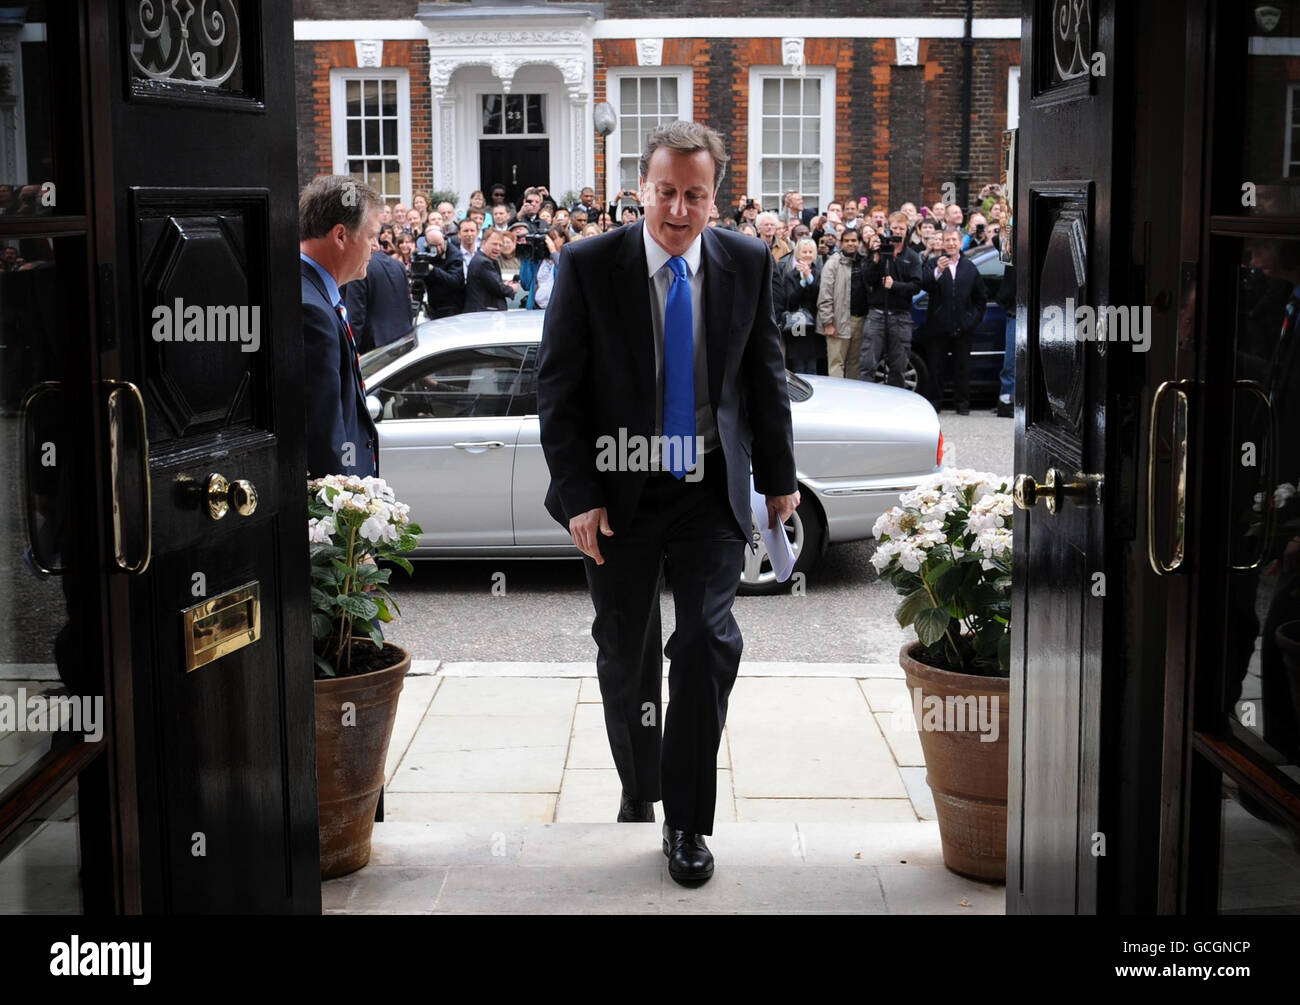 Il leader del Partito conservatore David Cameron arriva al St Stephen's Club nel centro di Londra per tenere una conferenza stampa in seguito al risultato delle elezioni generali del 2010. Foto Stock